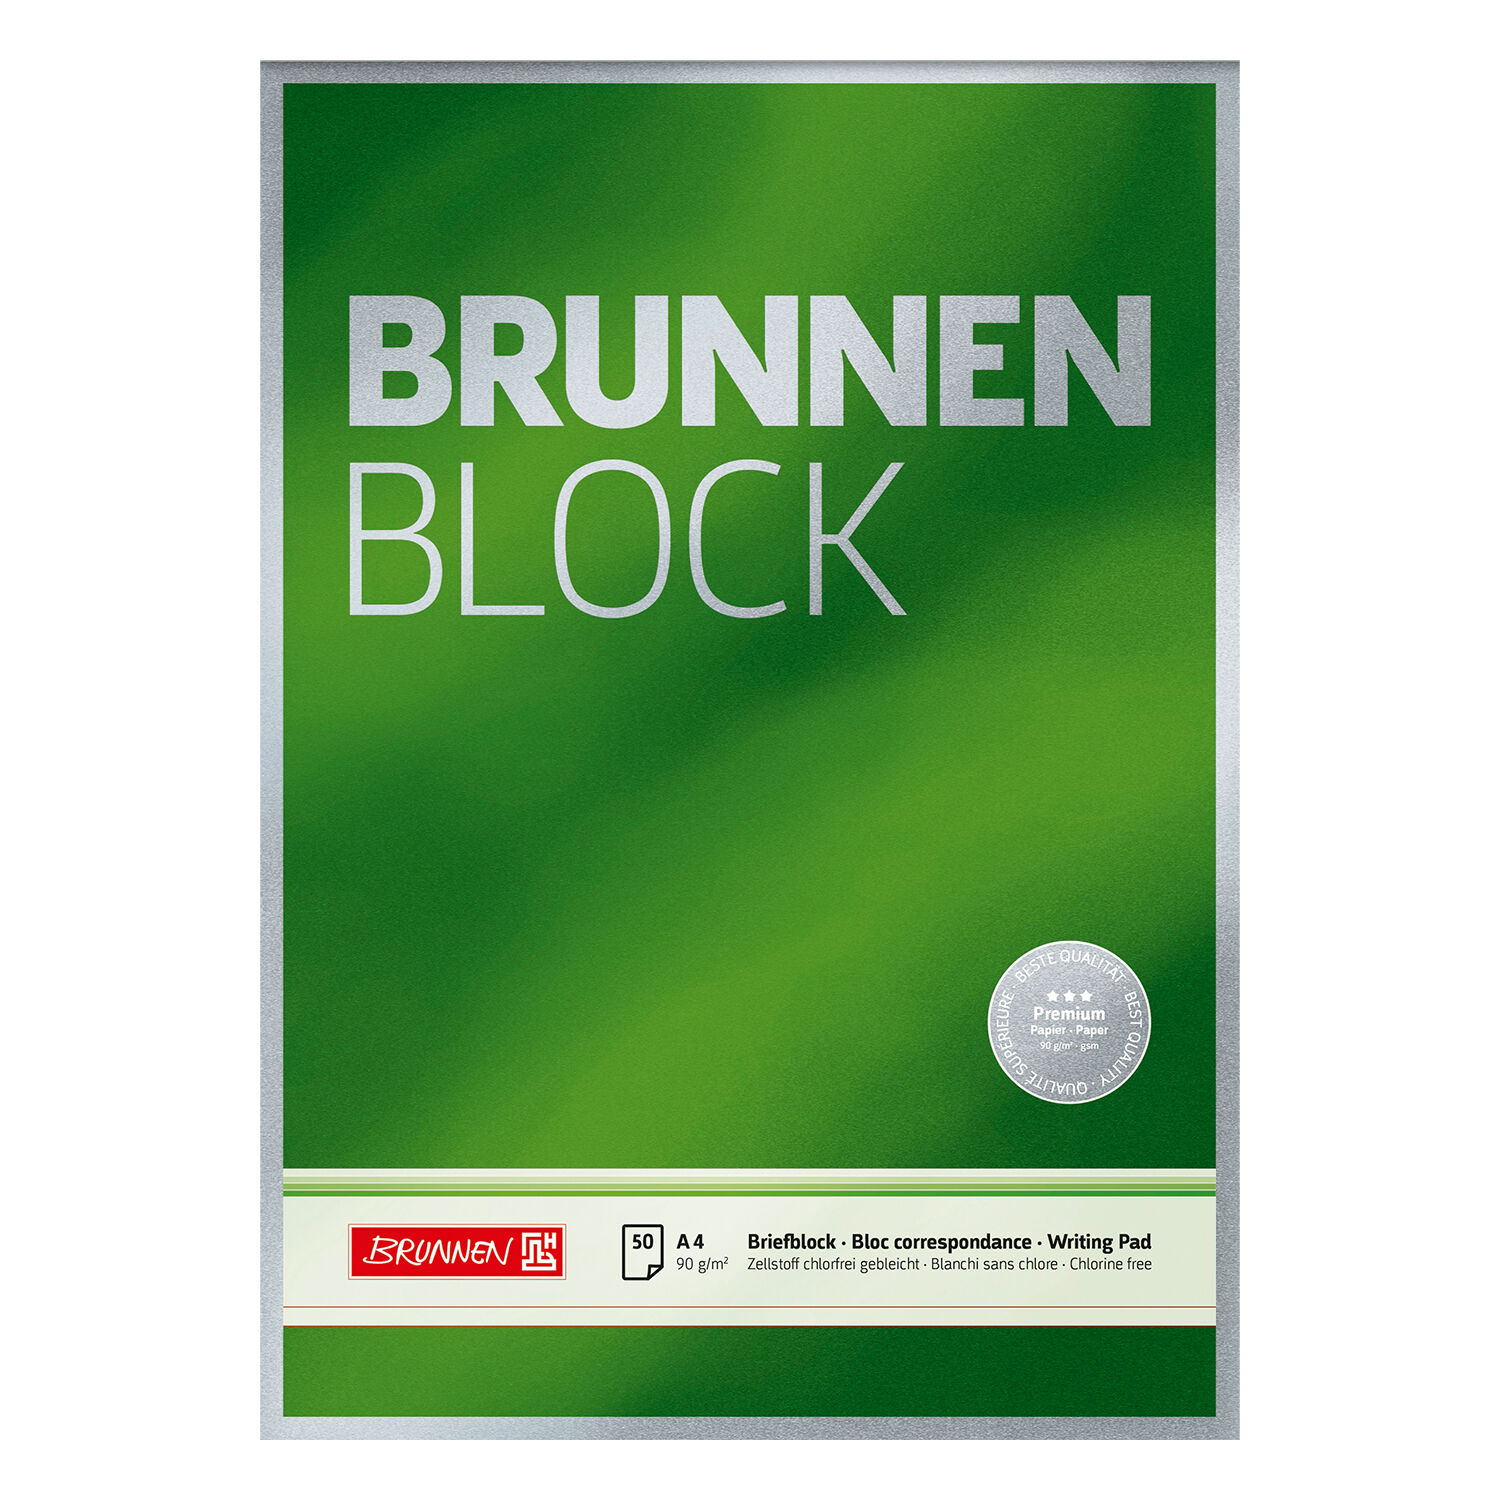 NEU Brunnen-Block Premium DIN A4, 90g, 50 Blatt, unliniert